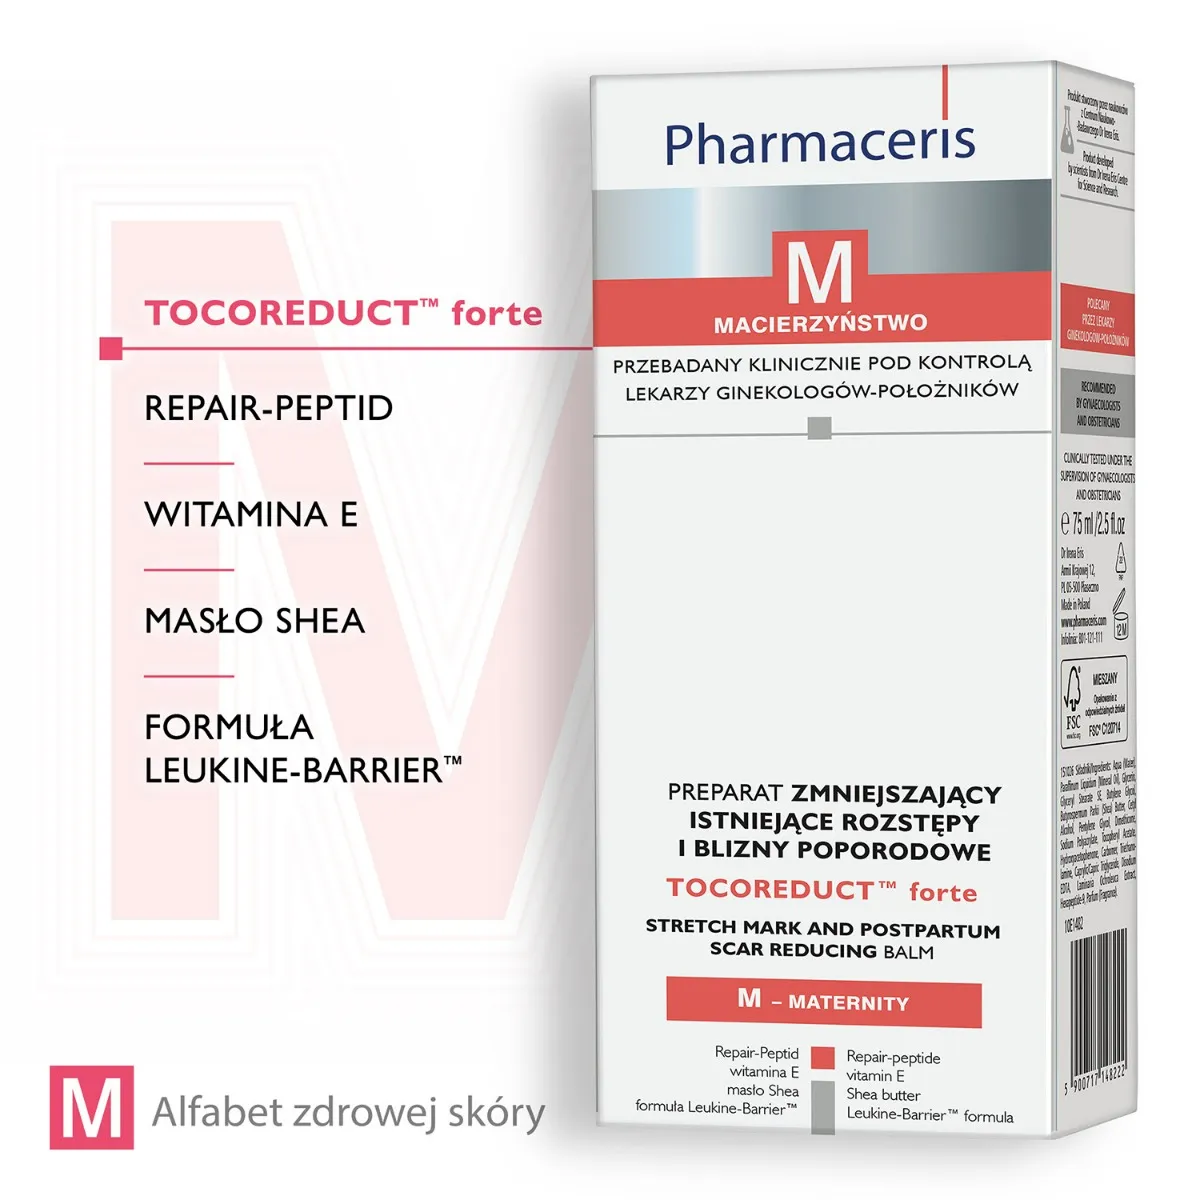 Pharmaceris M, Tocoreduct forte, preparat zmniejszający istniejące rozstępy i blizny poporodowe, 75 ml 